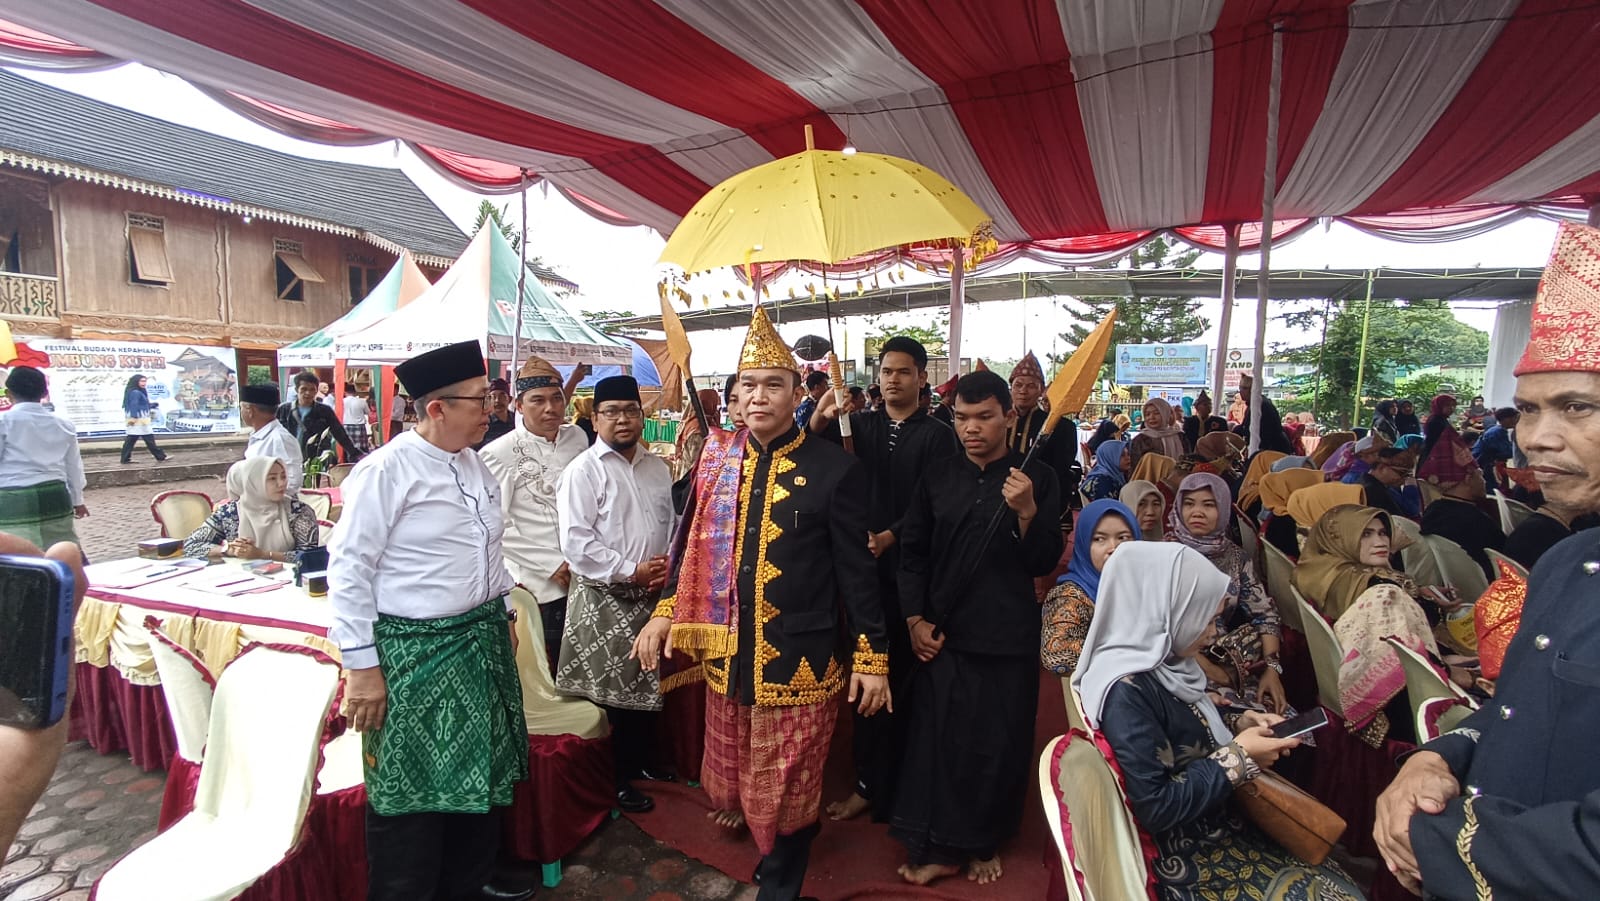  Mengenal Budaya Umbung Kutei di Kabupaten Kepahiang Bengkulu, Berikut Tahapan-tahapan Acaranya